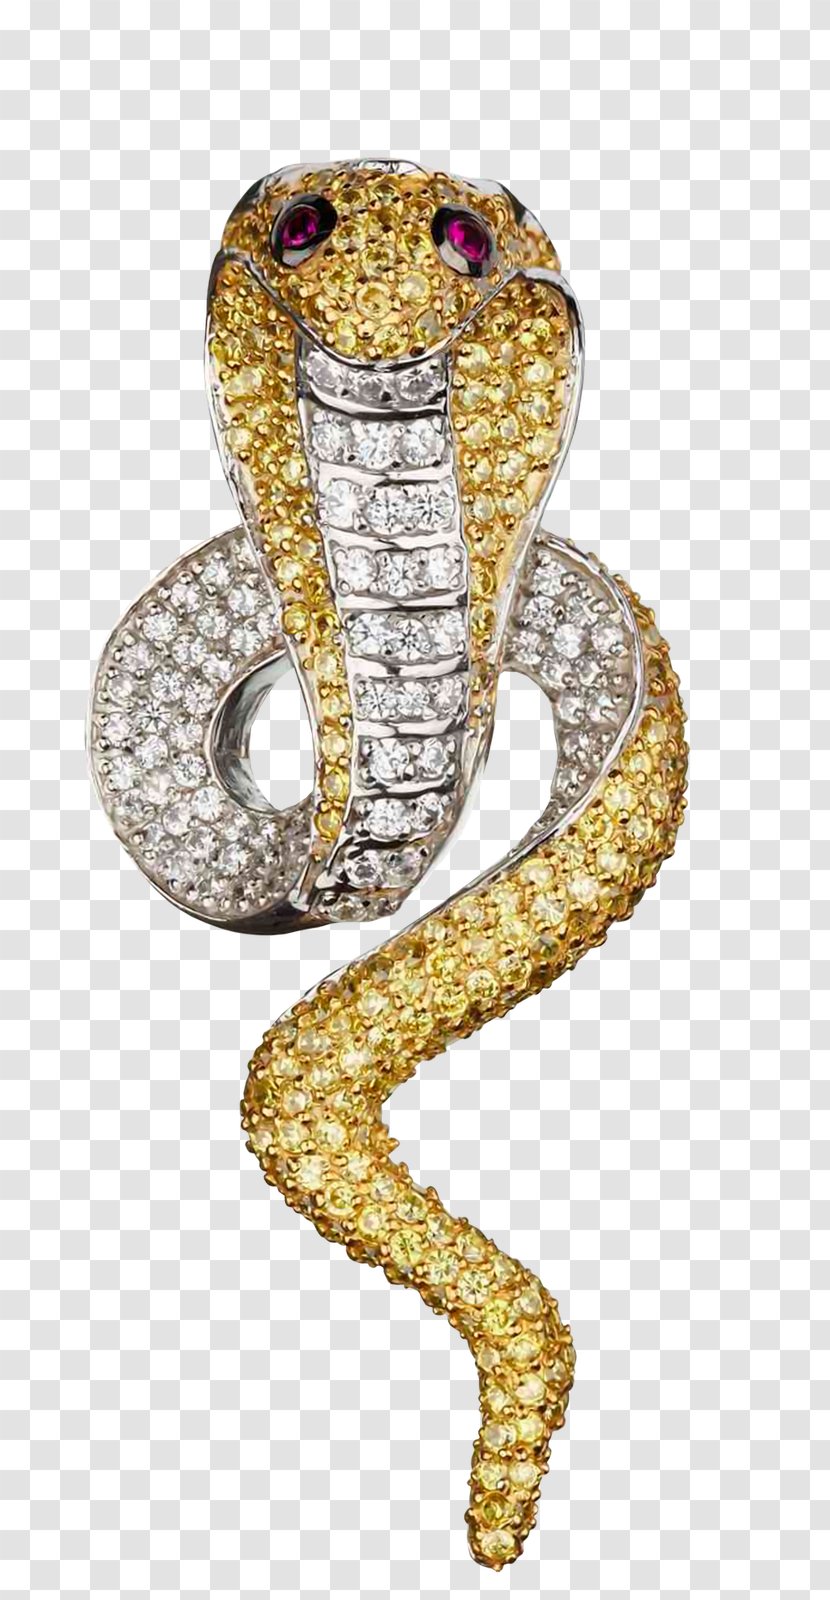 Rattlesnake Gold Cobra - Snake Transparent PNG